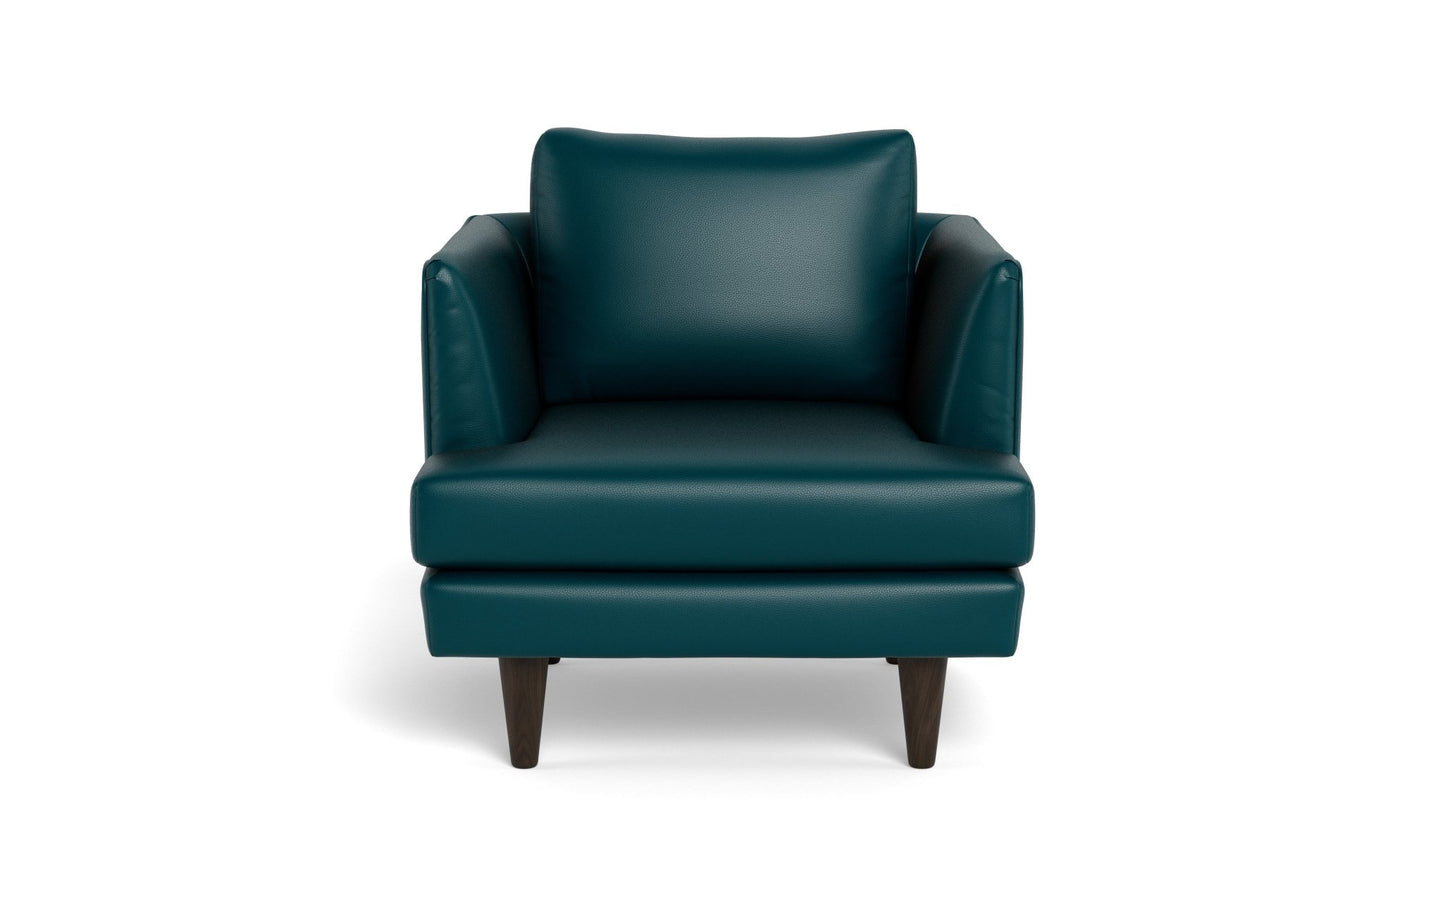 Rainey Leather Arm Chair